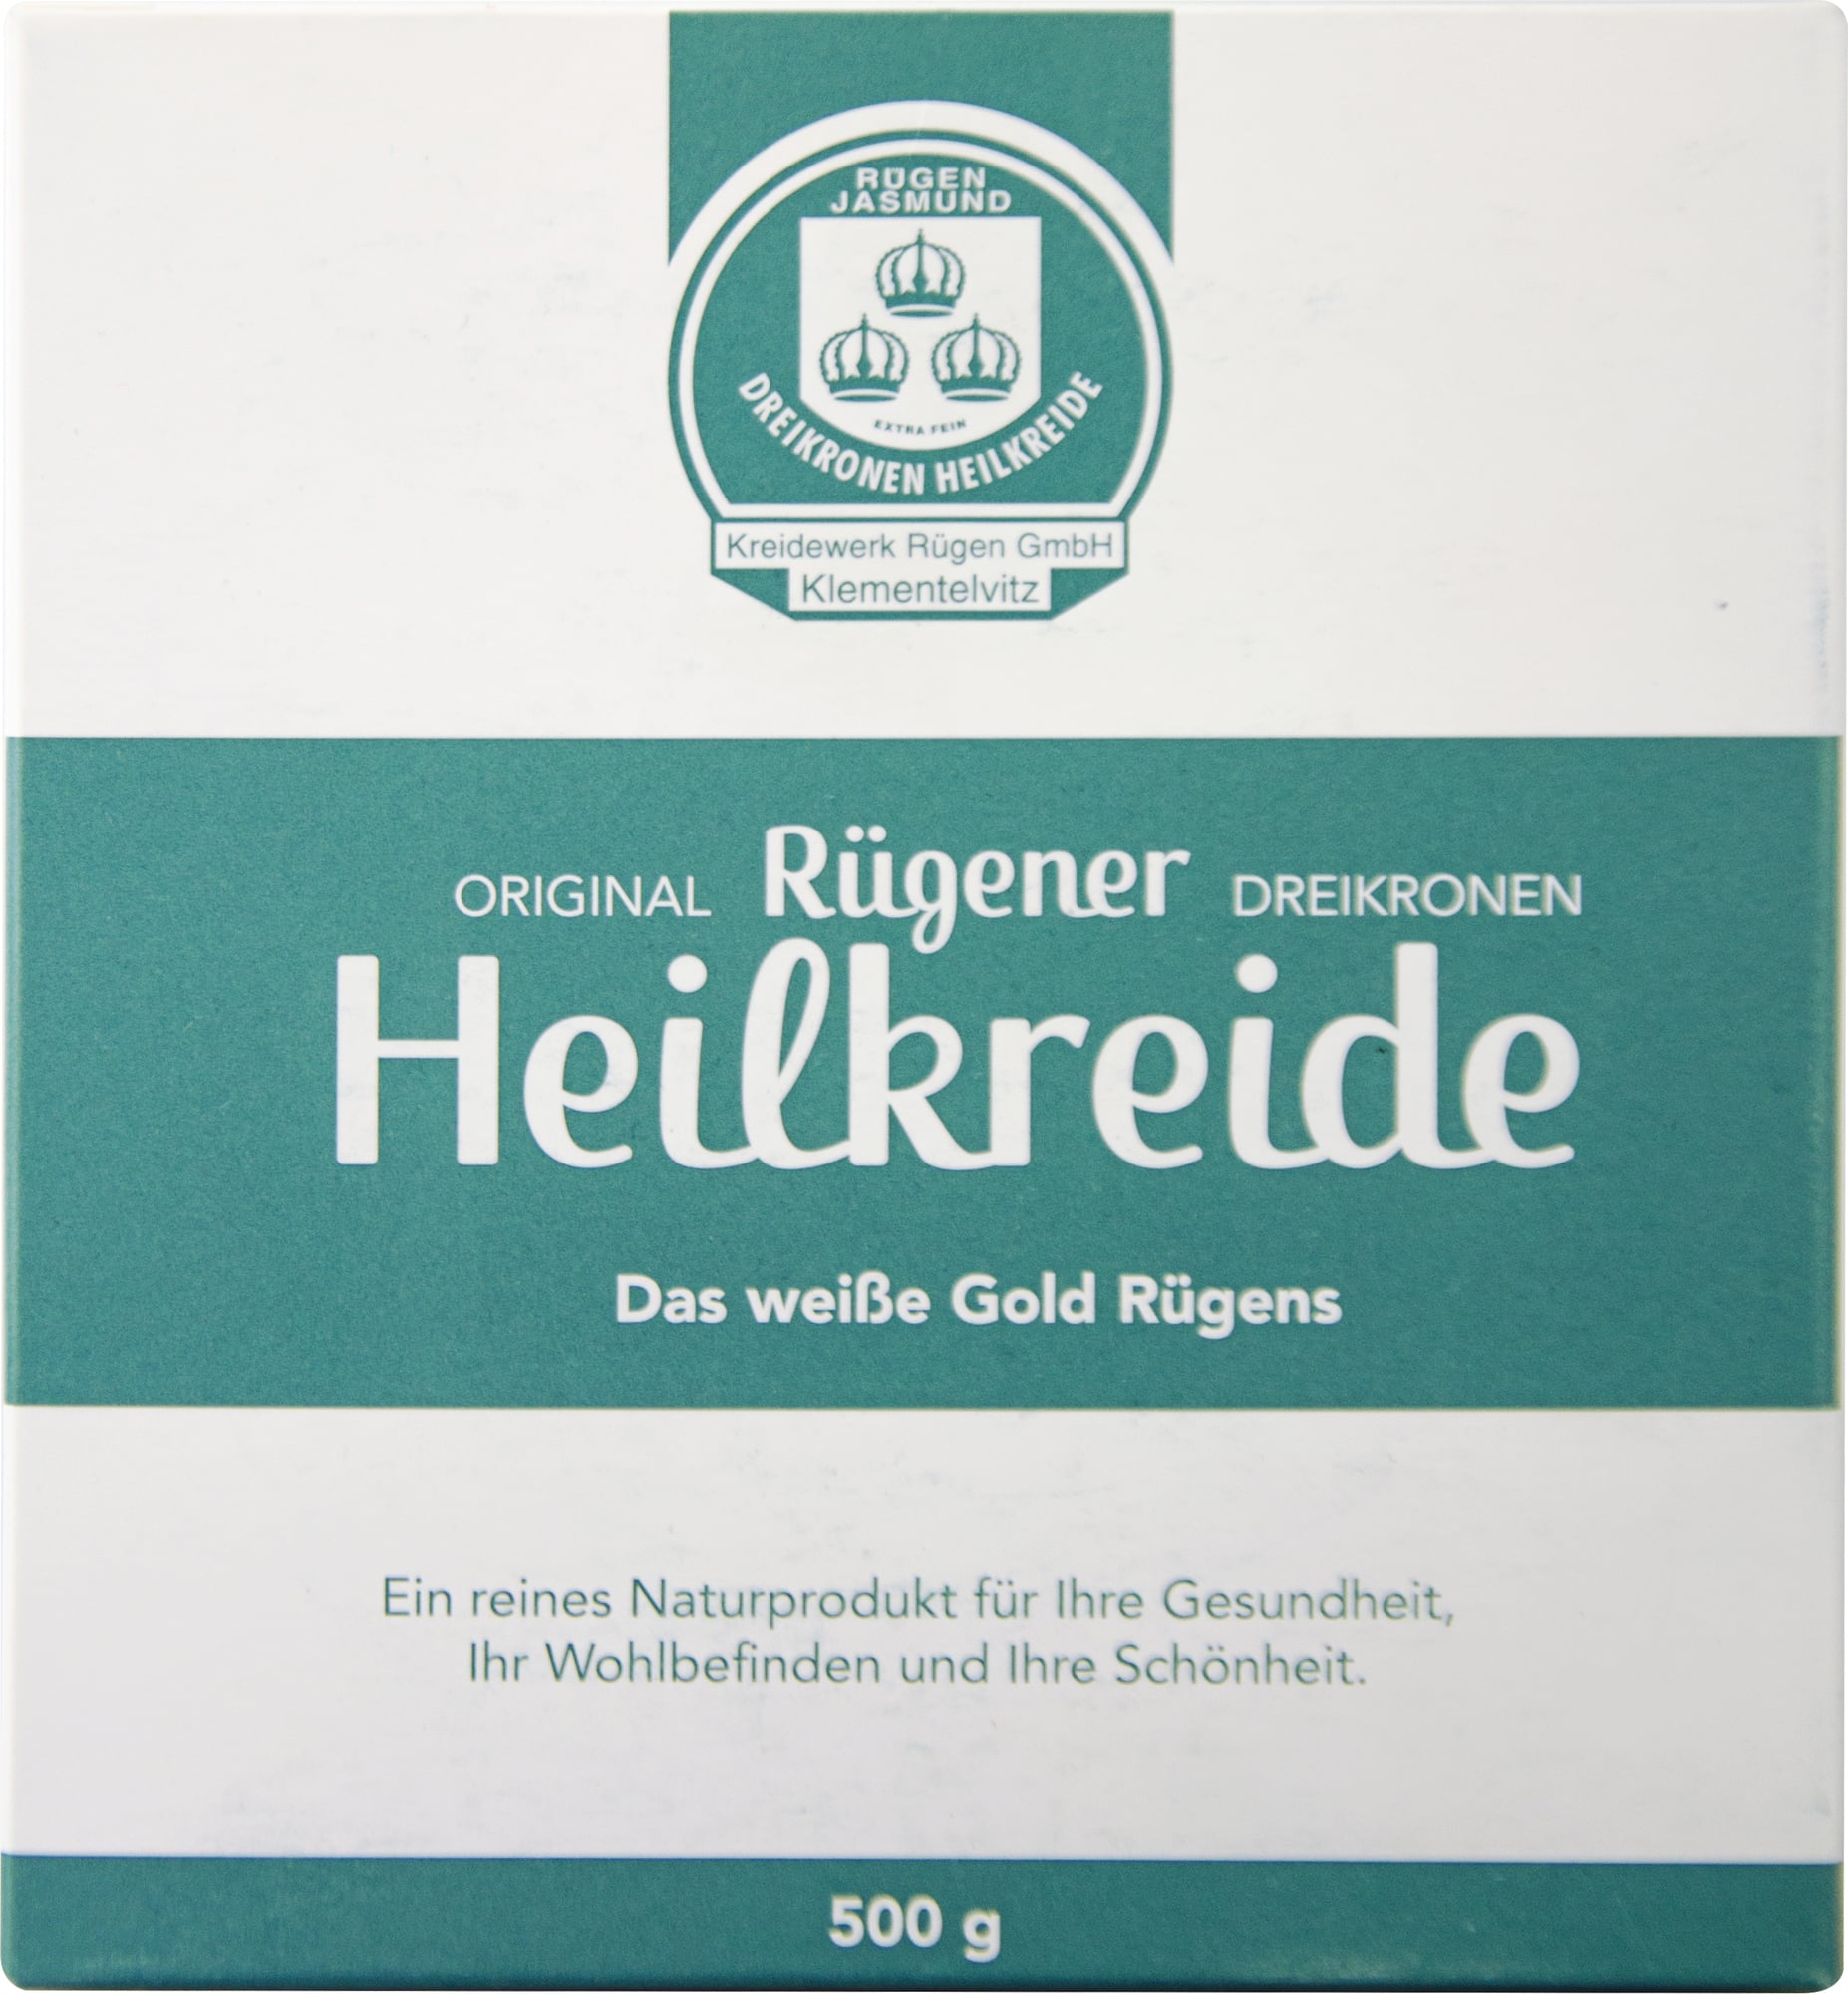 CMD Naturkosmetik Tiza Medicinal de Rügen - 500 g